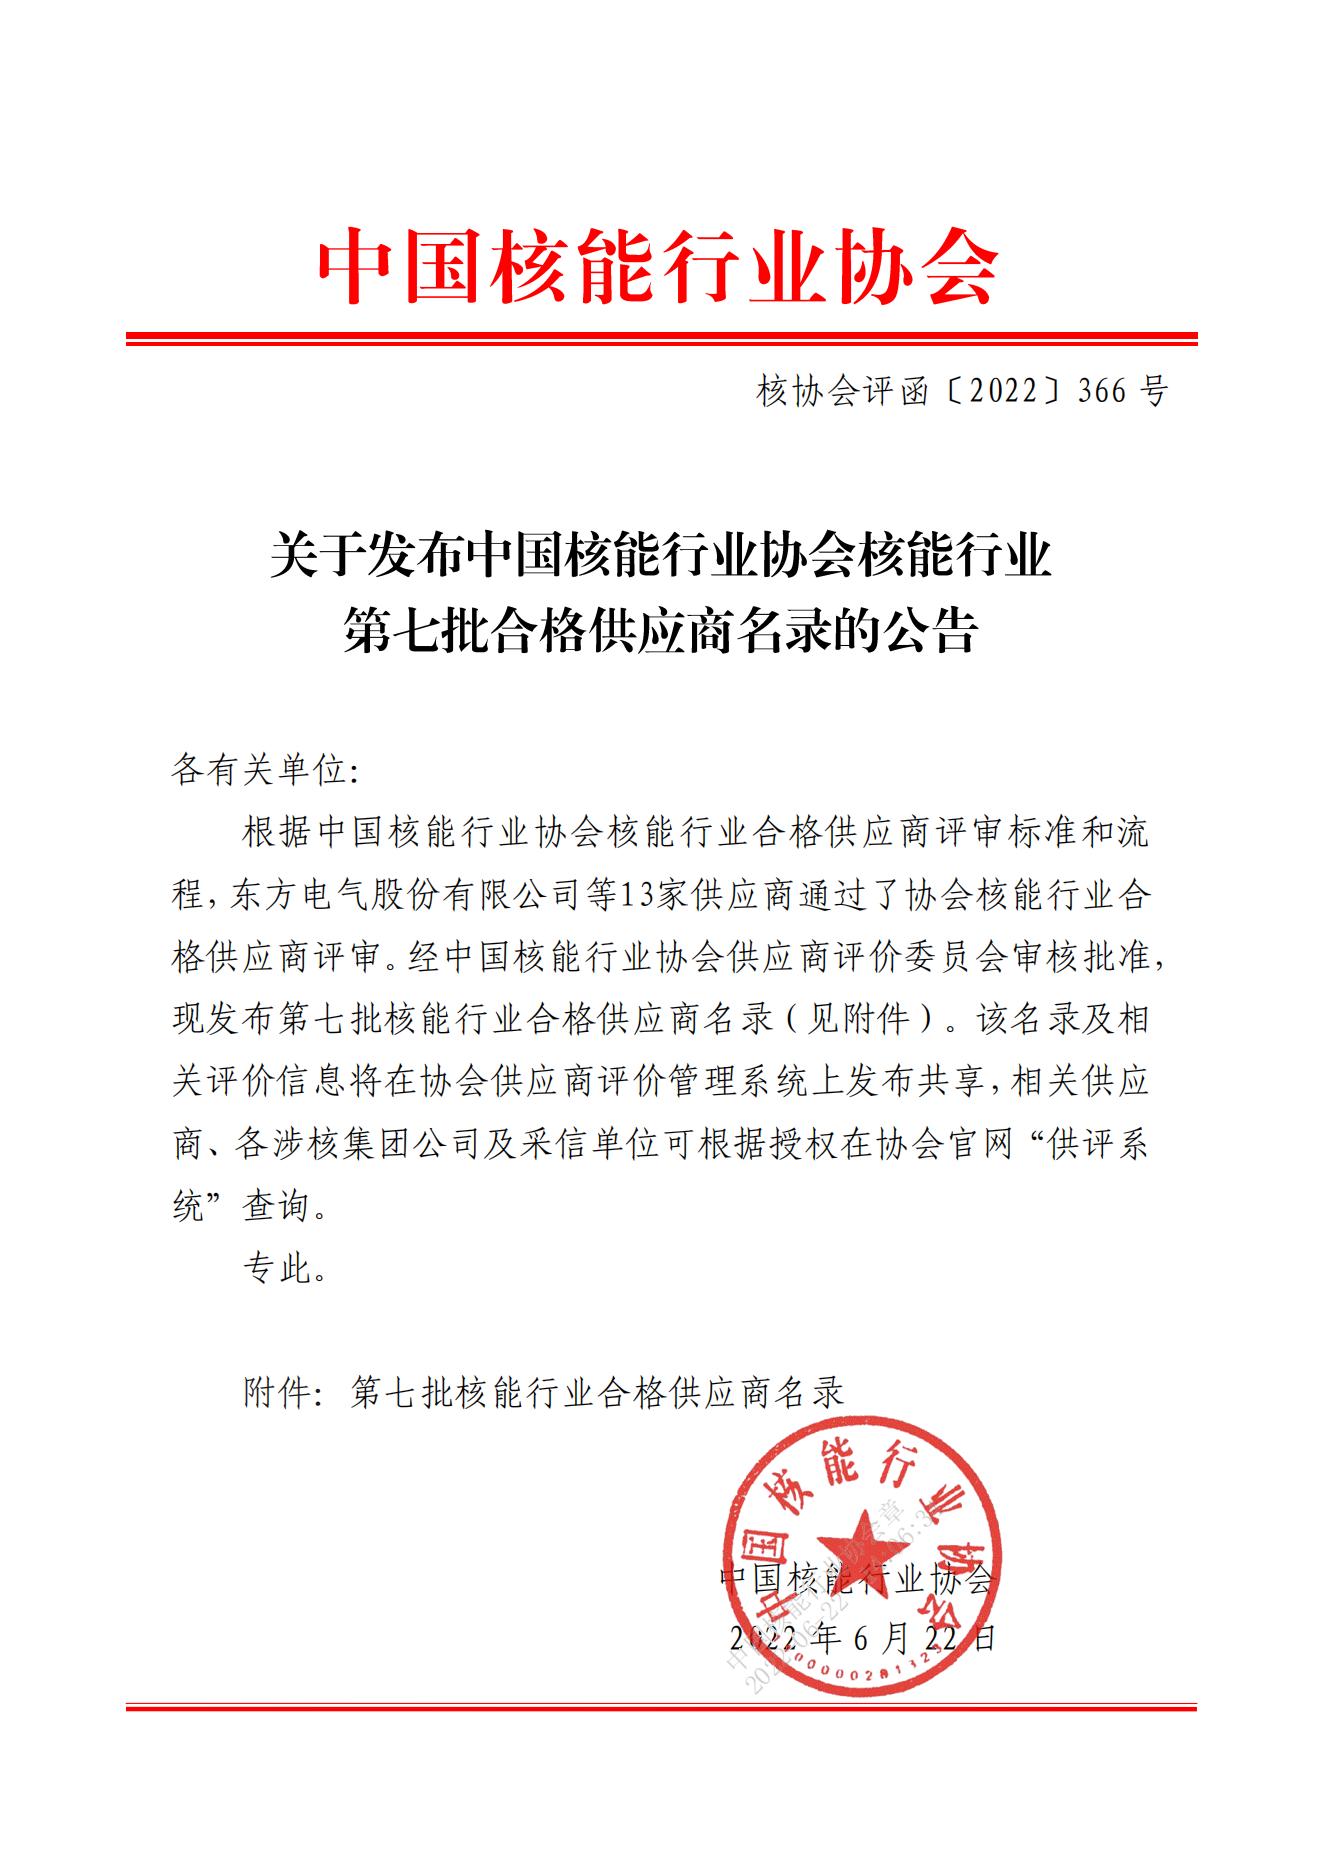 关于发布中国核能行业协会核能行业第七批合格供应商名录的公告_00.jpg